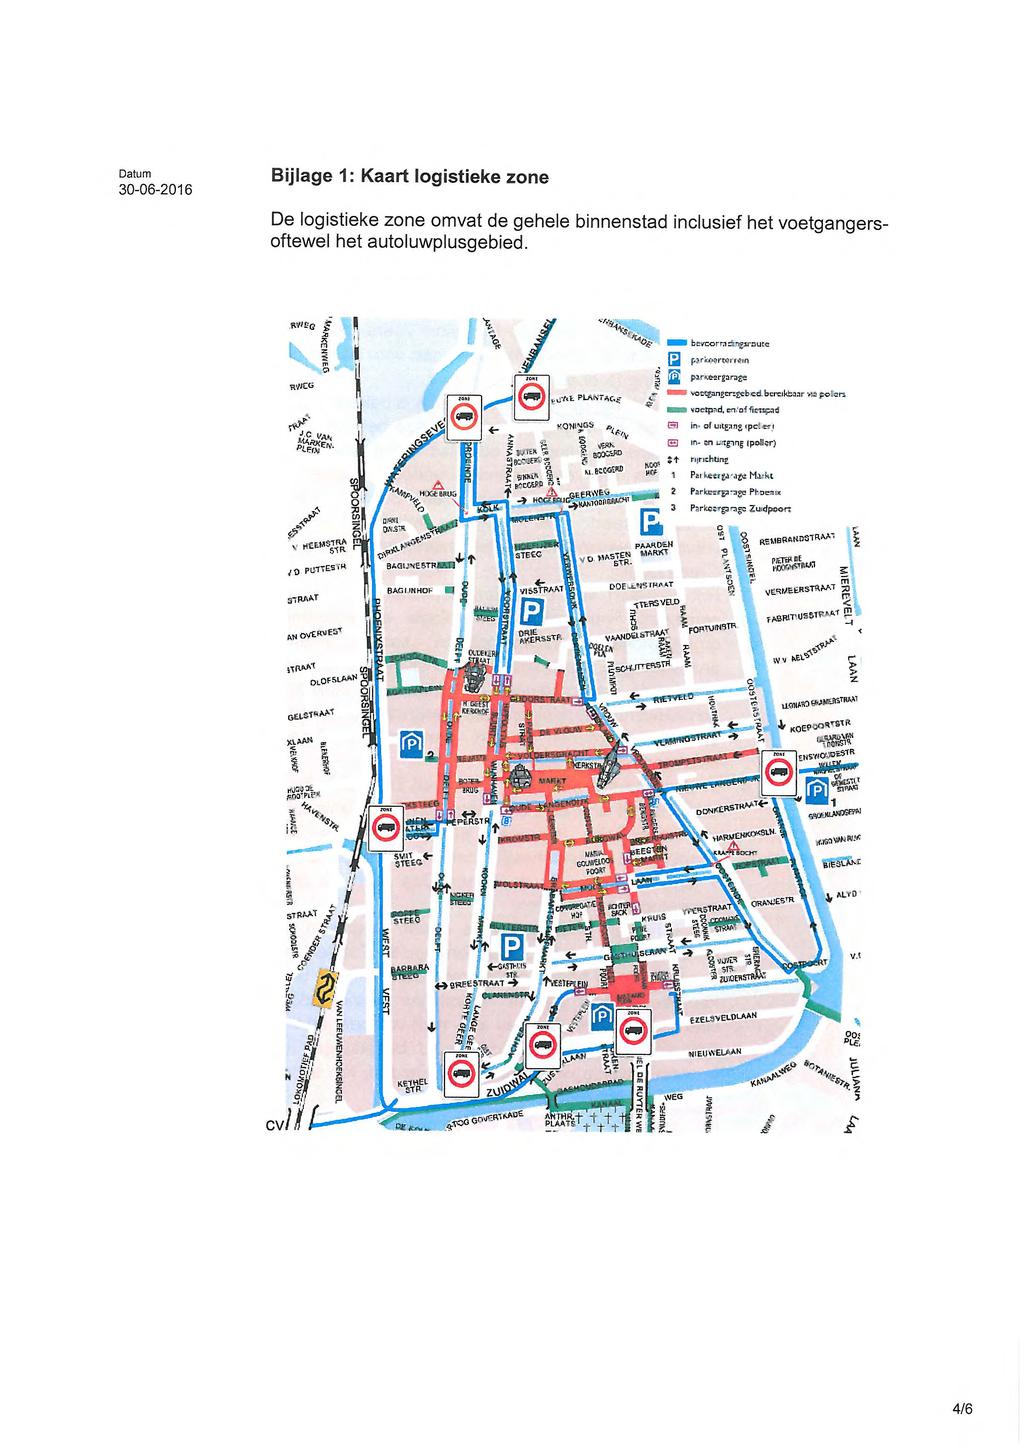 Bijlage 1: Kaart log istieke zone De logistieke zone omvat de gehele binnenstad inclusief het voetgangersoftewel het autoluwplusgebied. bevcorra Arc:Emote parinwoermin ritems - 5 V.